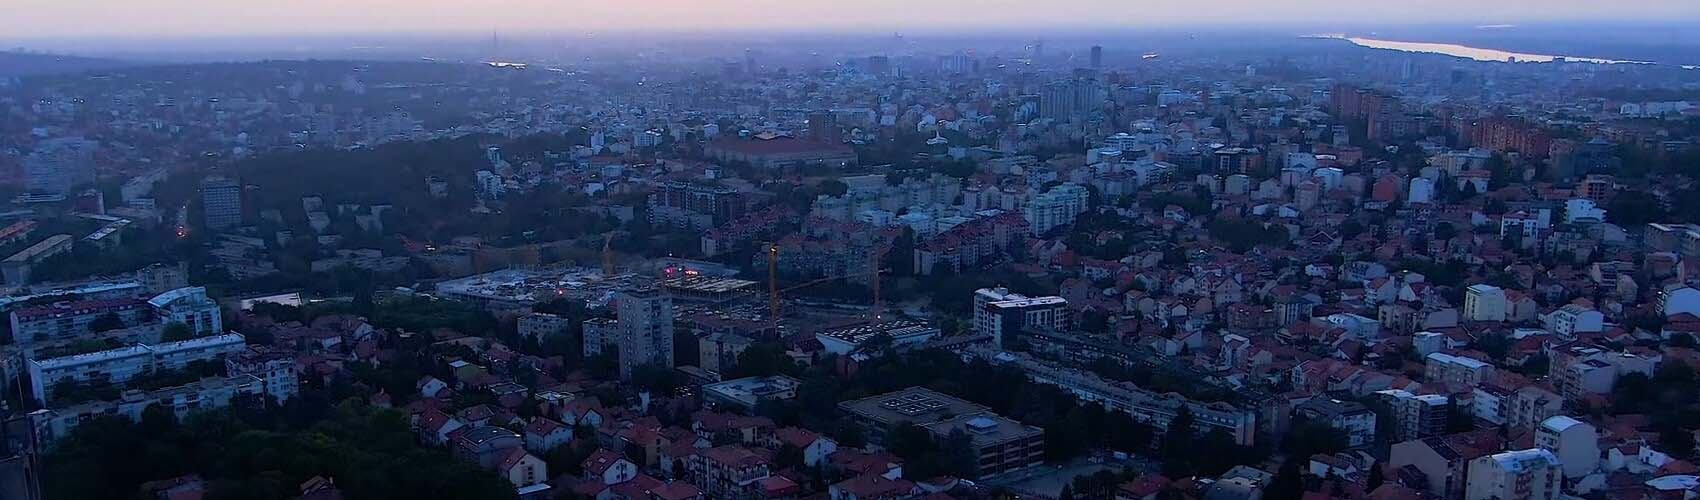 Iznajmljivanje kombija Konjarnik | DeltaTop, Beograd